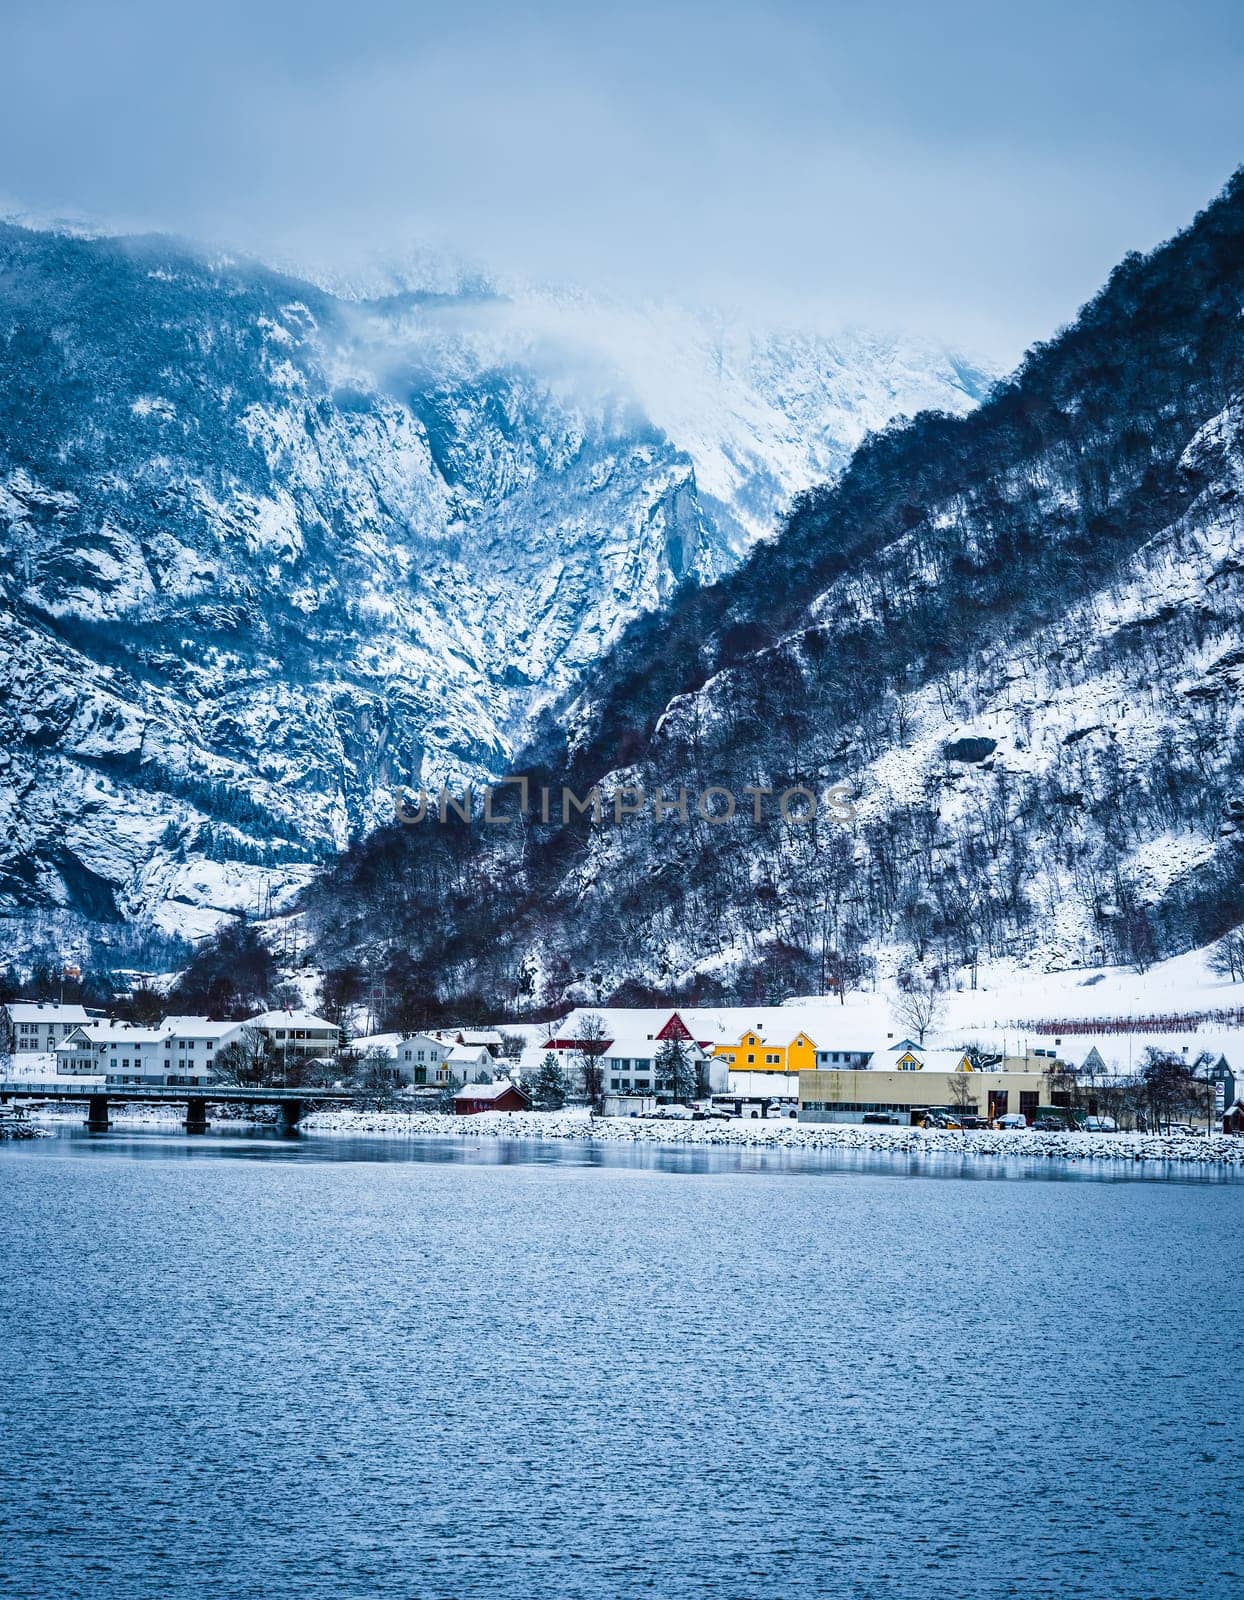 Norwegian Fjords in winter by GekaSkr